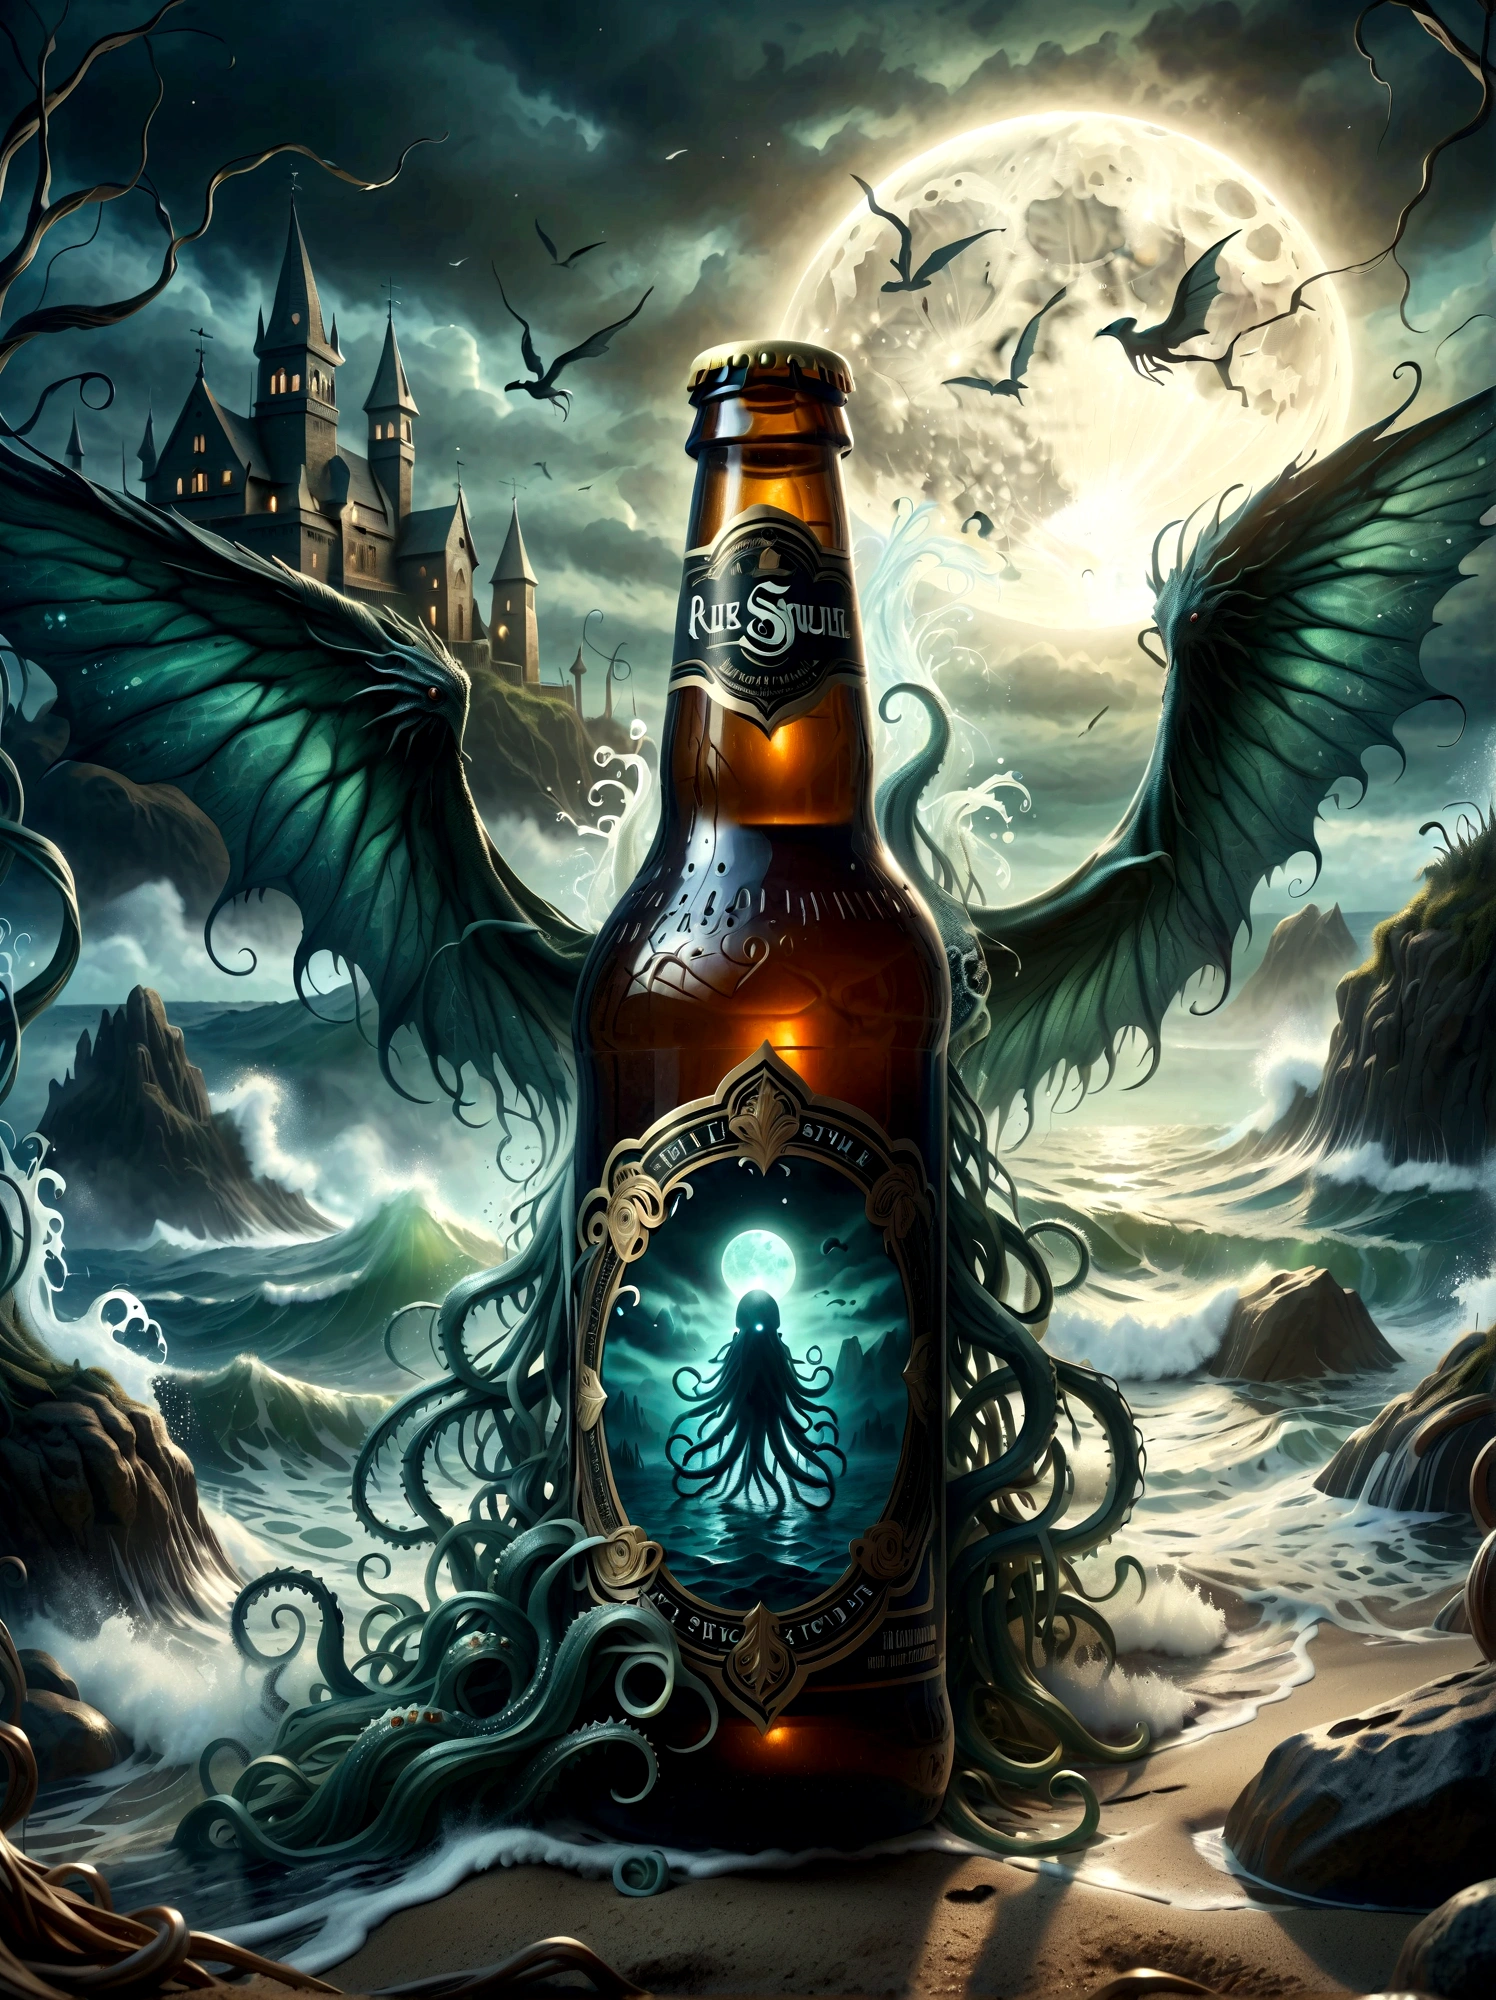 Visualisieren Sie dies: ein schwach beleuchteter alter, kolossale Kreatur, erinnert an Lovecrafts Kreatur mit Tentakeln und Flügeln - die bedrohlich durch neblige Gewässer herabsteigt. Im Vordergrund, ein Craft-Bier mit aufwendigen Details auf der Flasche, das schaumige Bier quoll fast über den Rand, mit der unheimlichen Kulisse, die sich subtil auf der Glasoberfläche spiegelt. Die Atmosphäre ist dicht mit einer Unterströmung subtilen Grauens, die Sie verführerisch in dieses Szenario lockt, das aus Lovecrafts unheimlicher Welt entlehnt, aber mit modernen Elementen neu interpretiert wurde.